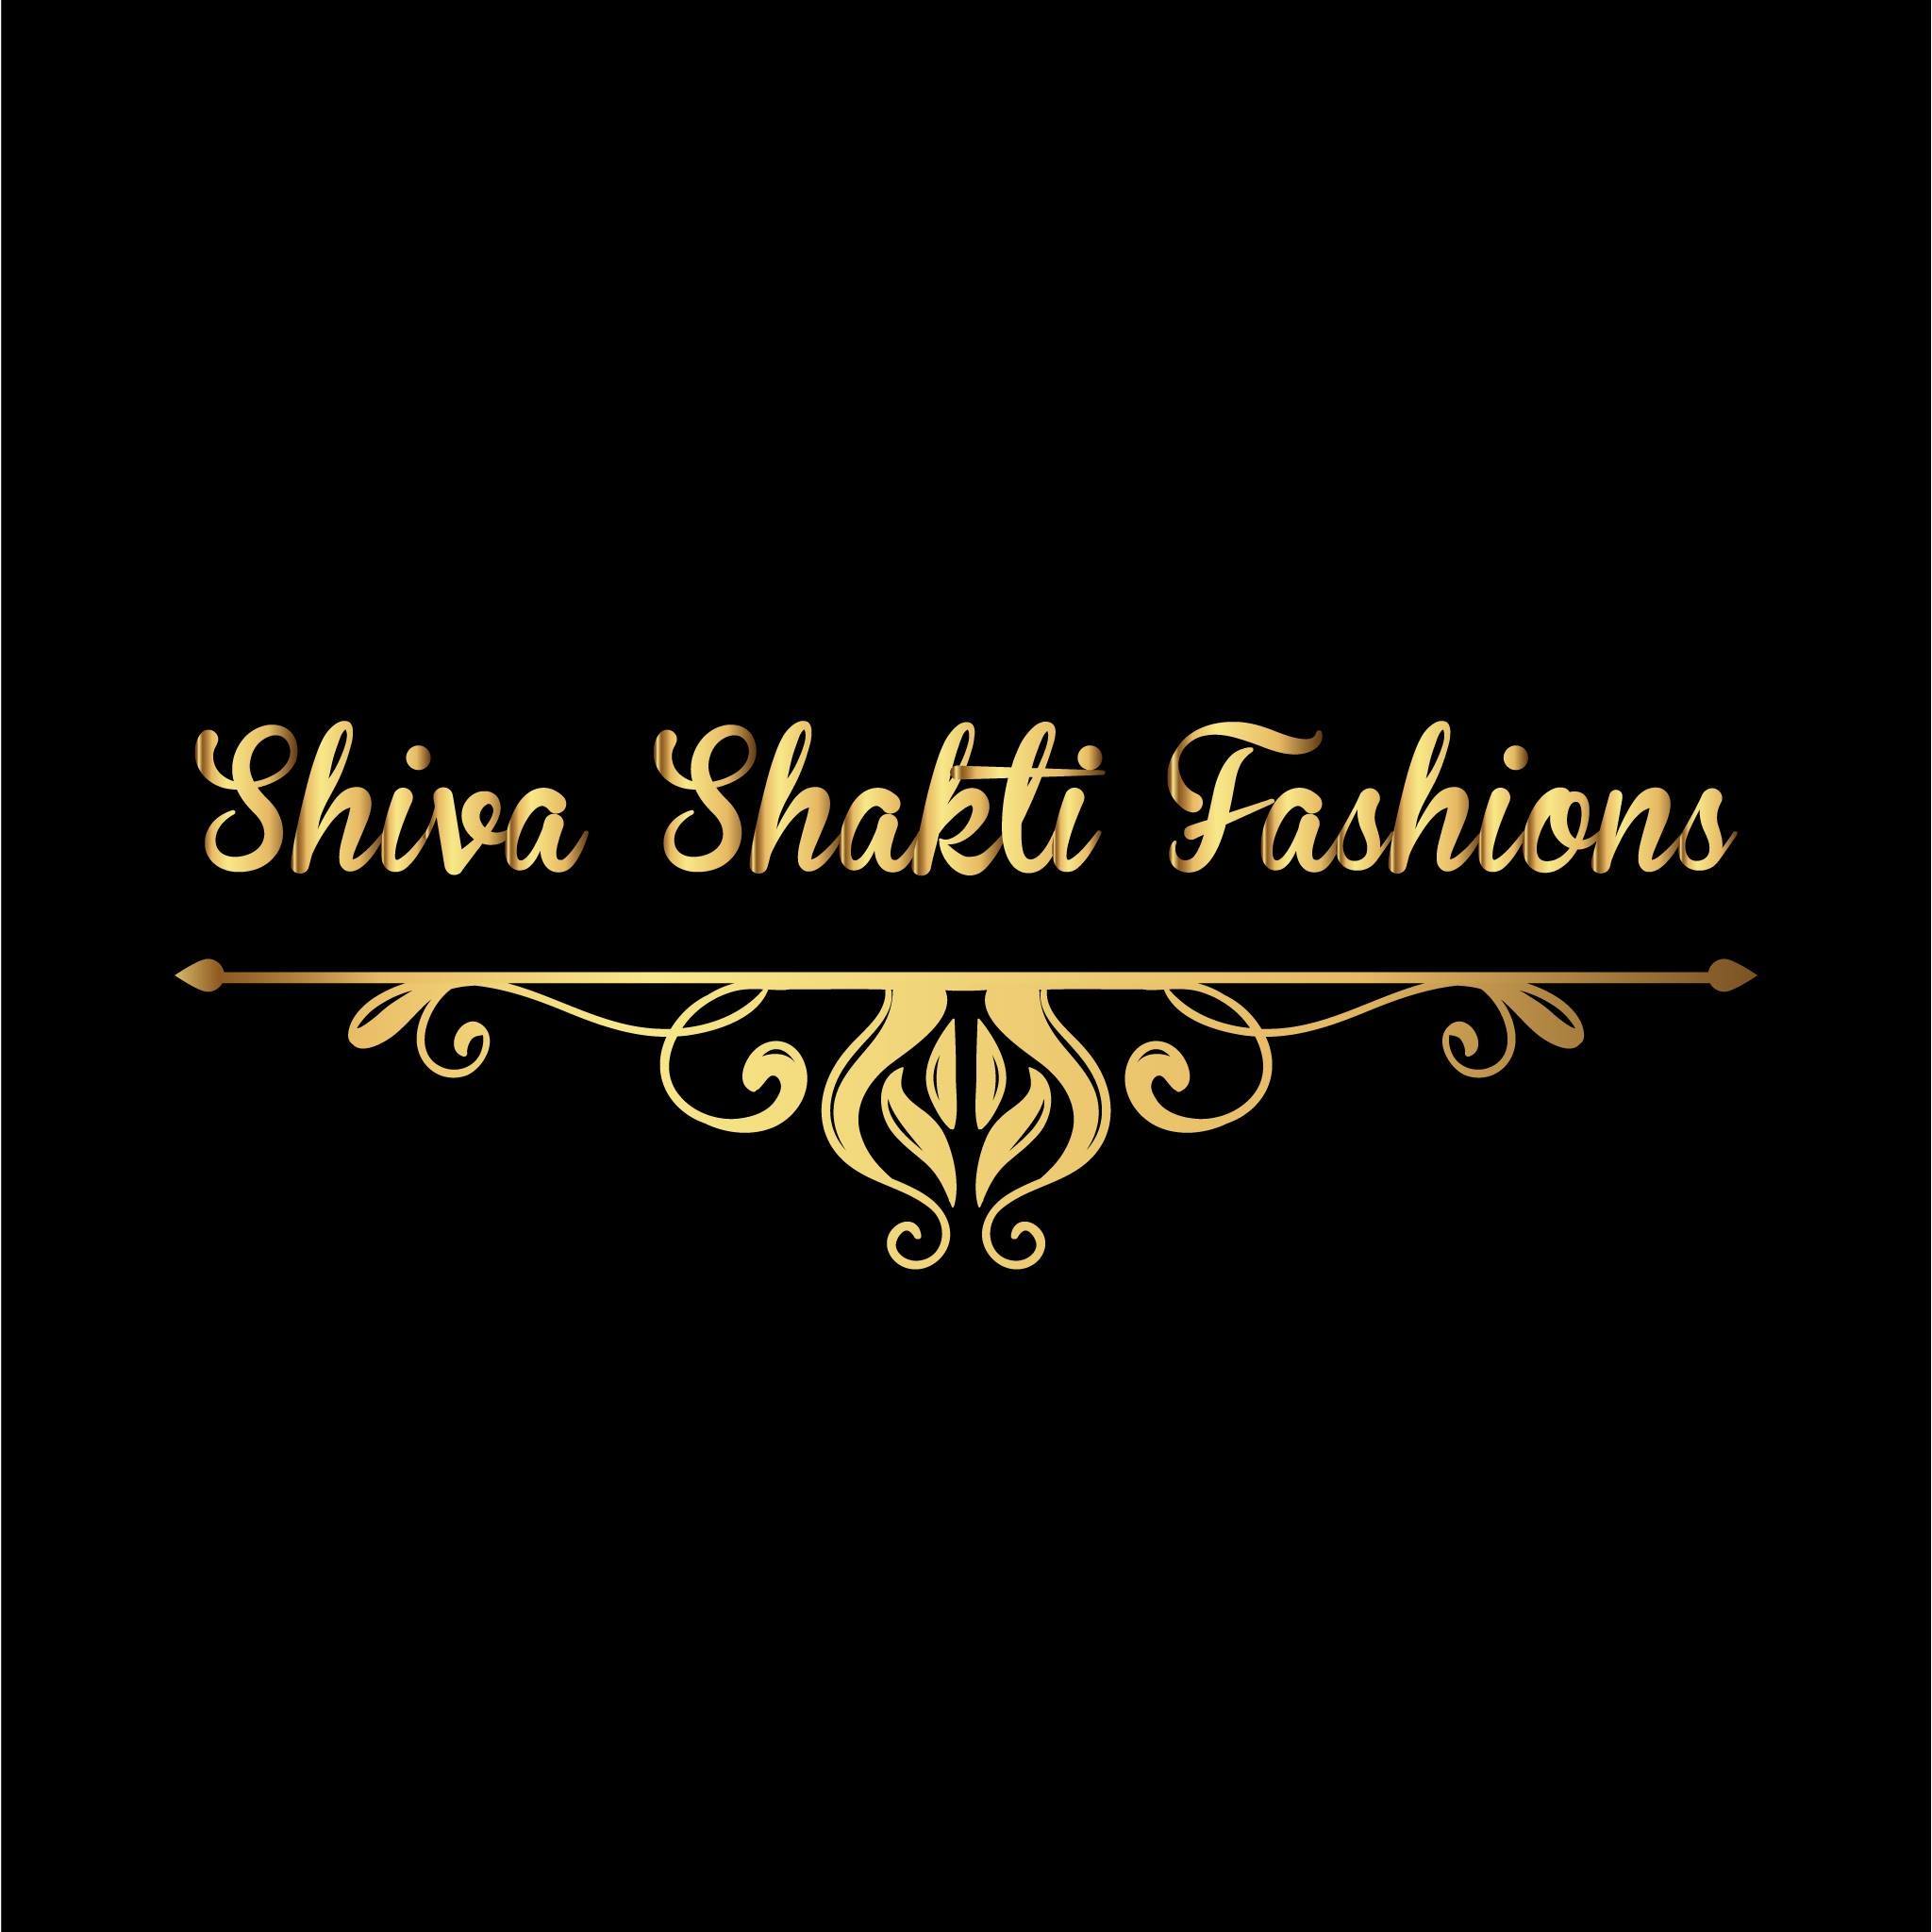 Shiva Shakti Fashion